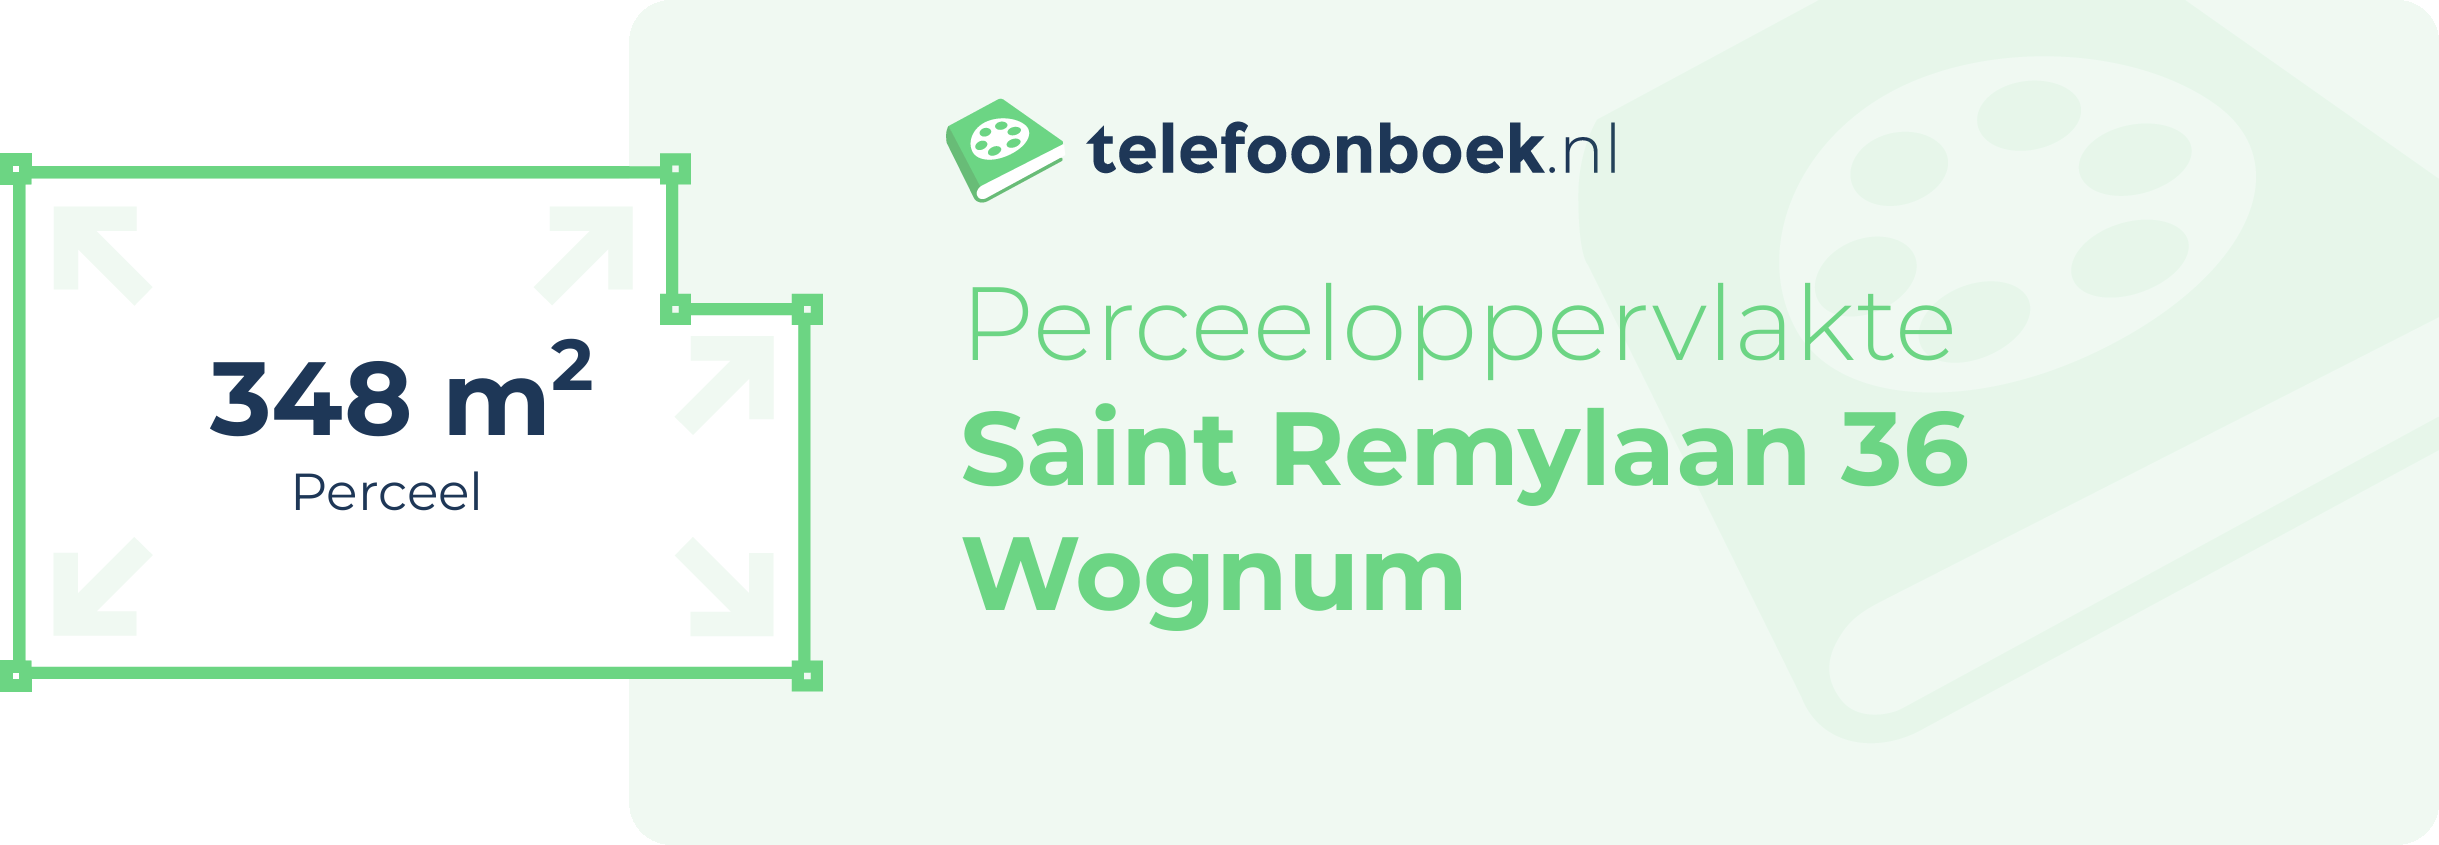 Perceeloppervlakte Saint Remylaan 36 Wognum